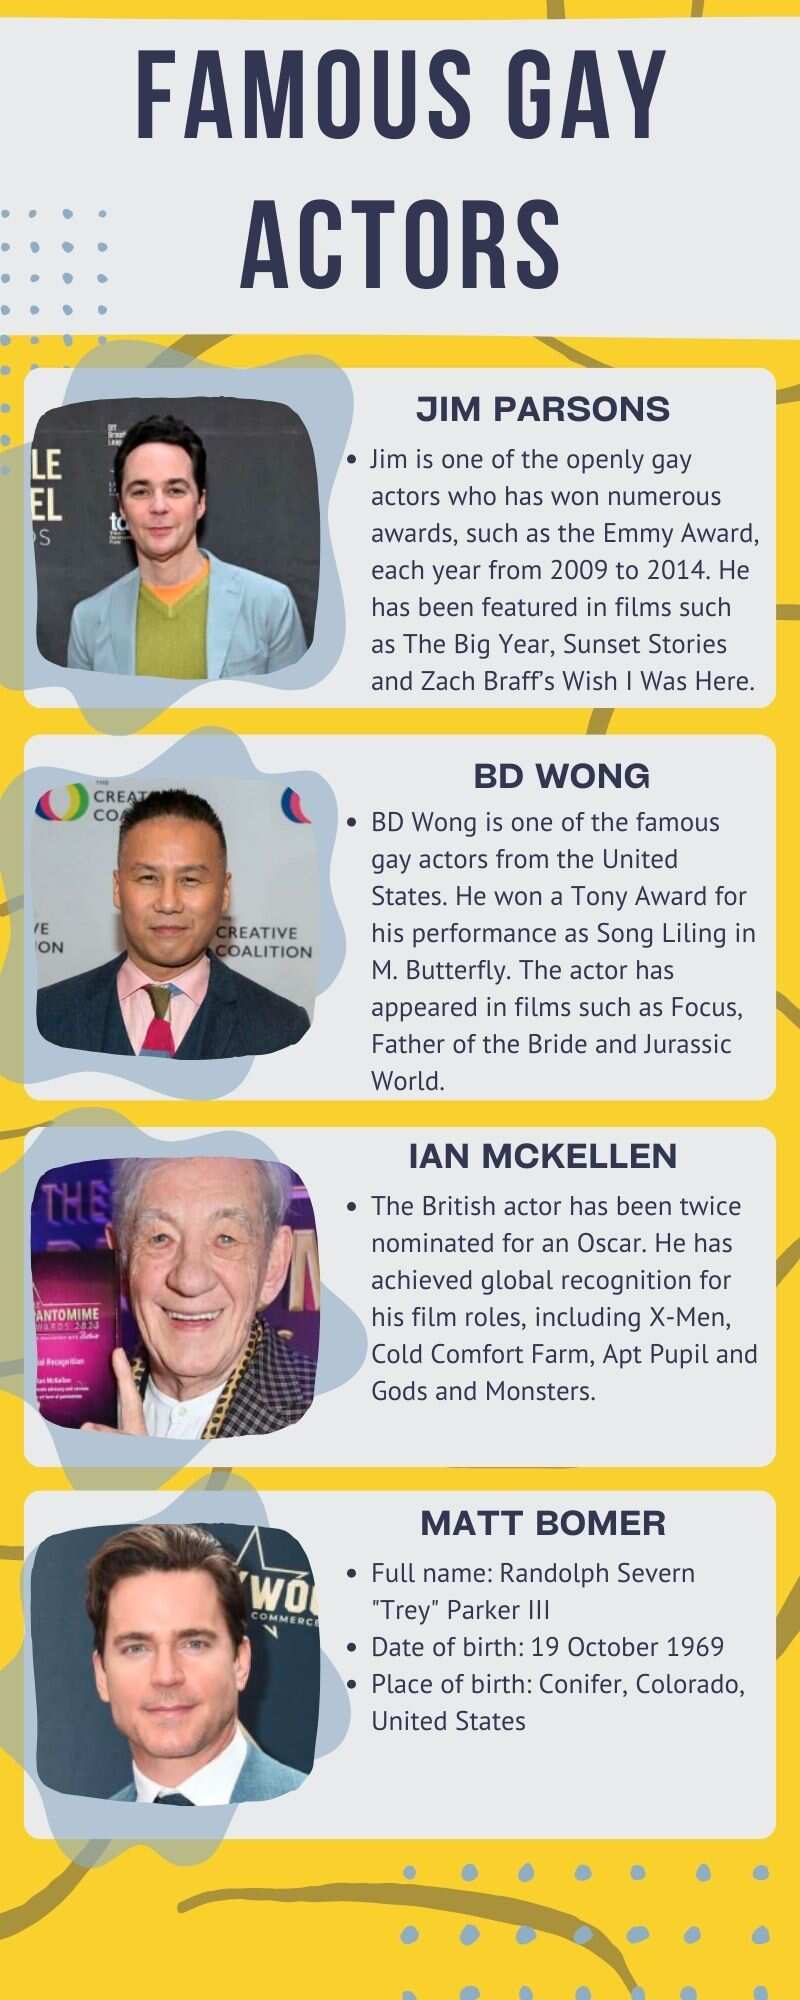 Famous gay actors